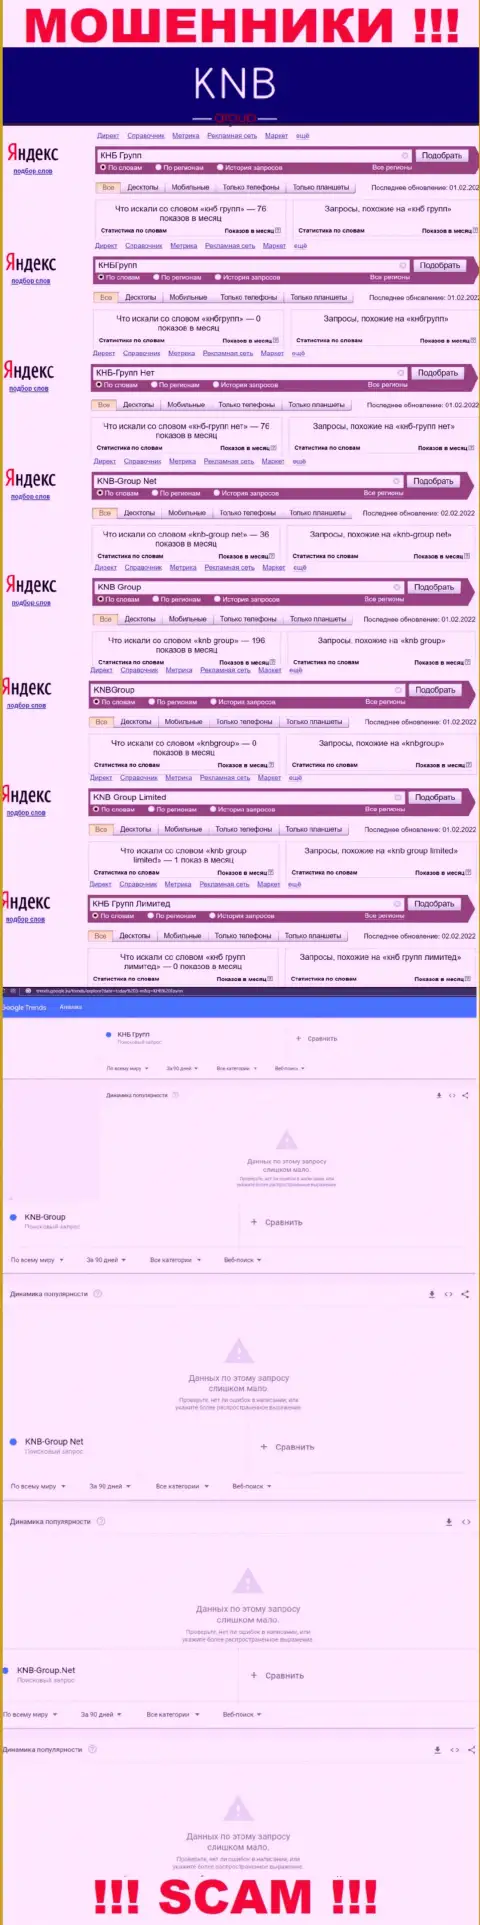 Скриншот результатов online запросов по неправомерно действующей конторе KNB Group Limited